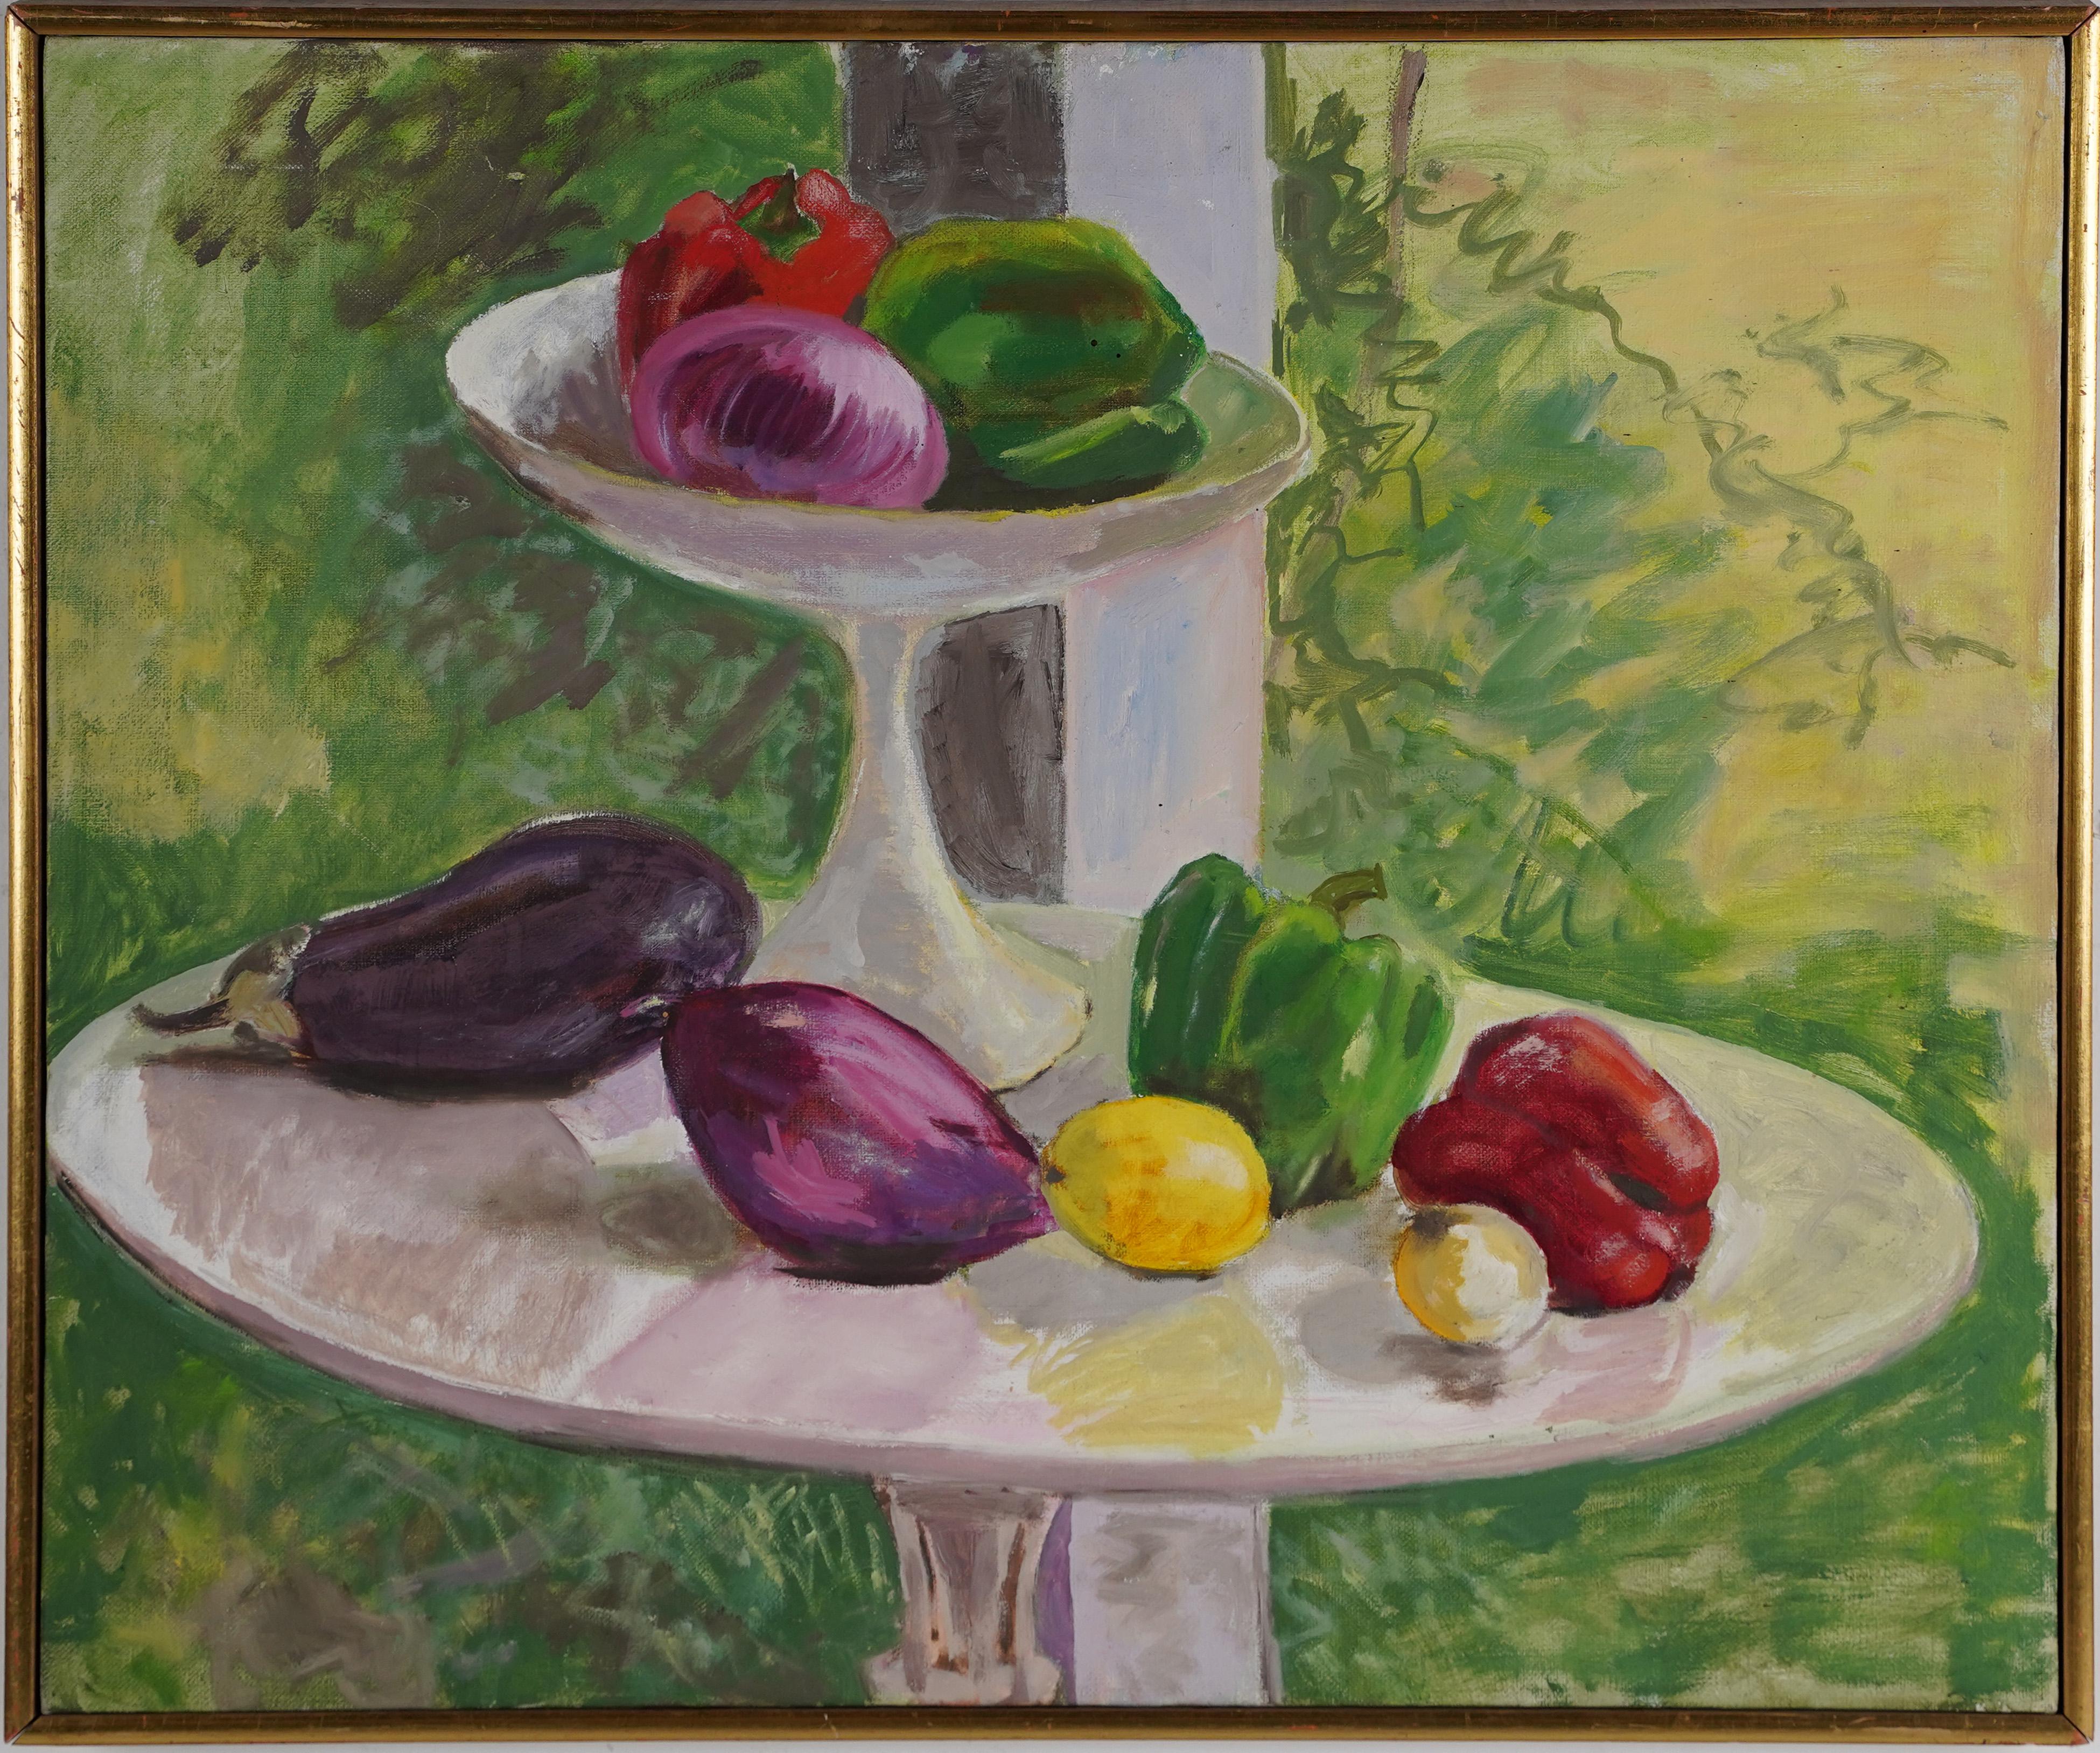 Abstract Painting Unknown - Nature morte de jardin à légumes de l'ancienne école américaine moderniste, peinture à l'huile